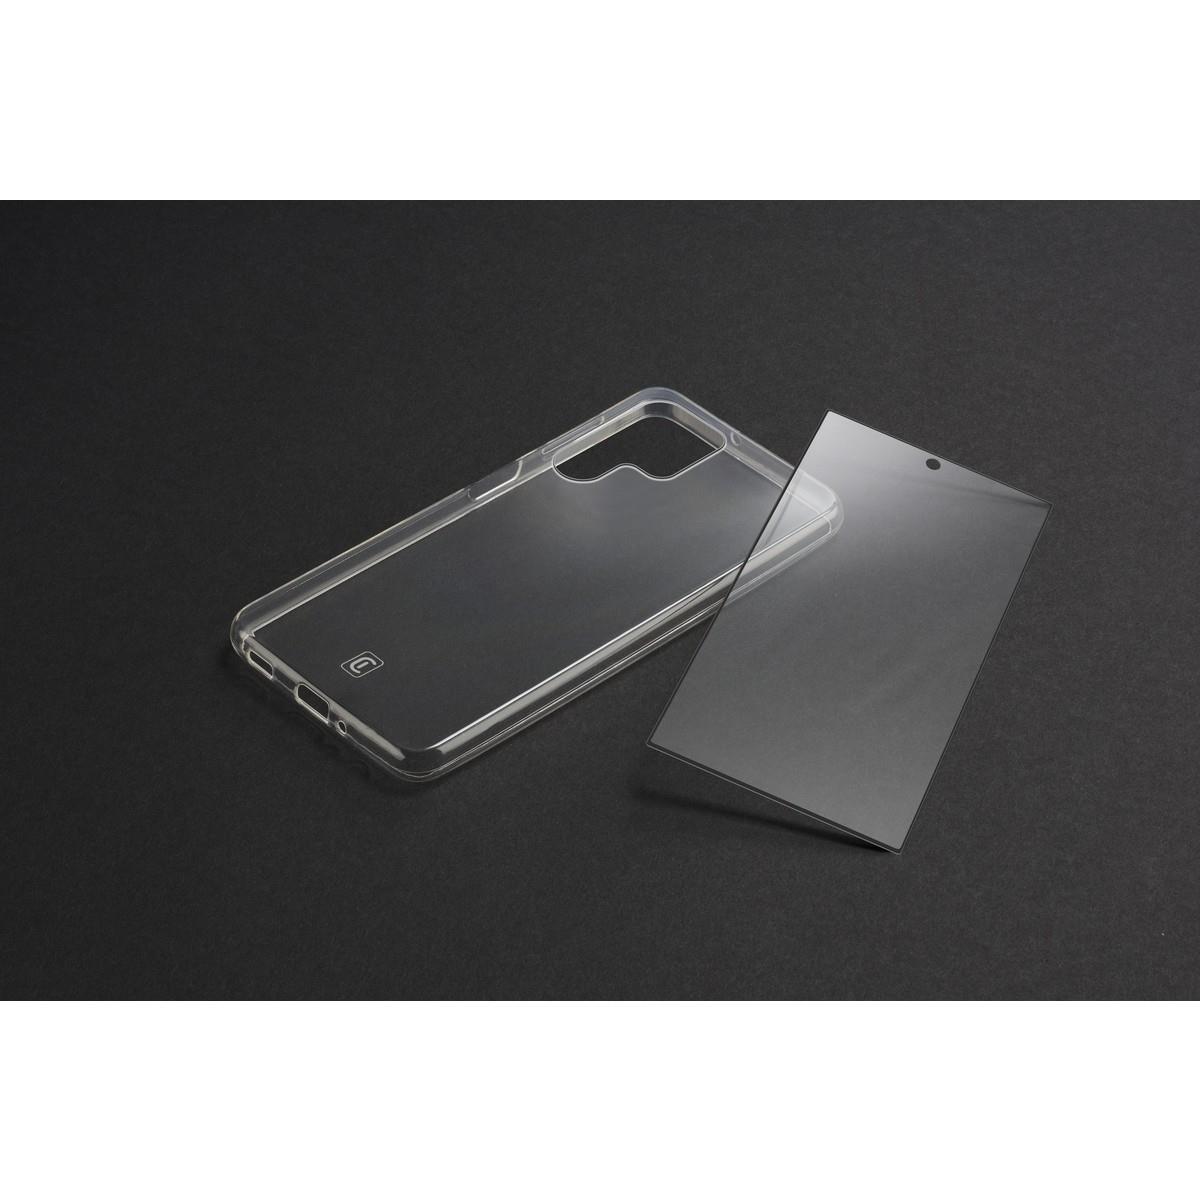 Set PROTECTION KIT aus Backcover und Schutzglas für Samsung Galaxy S23 Ultra